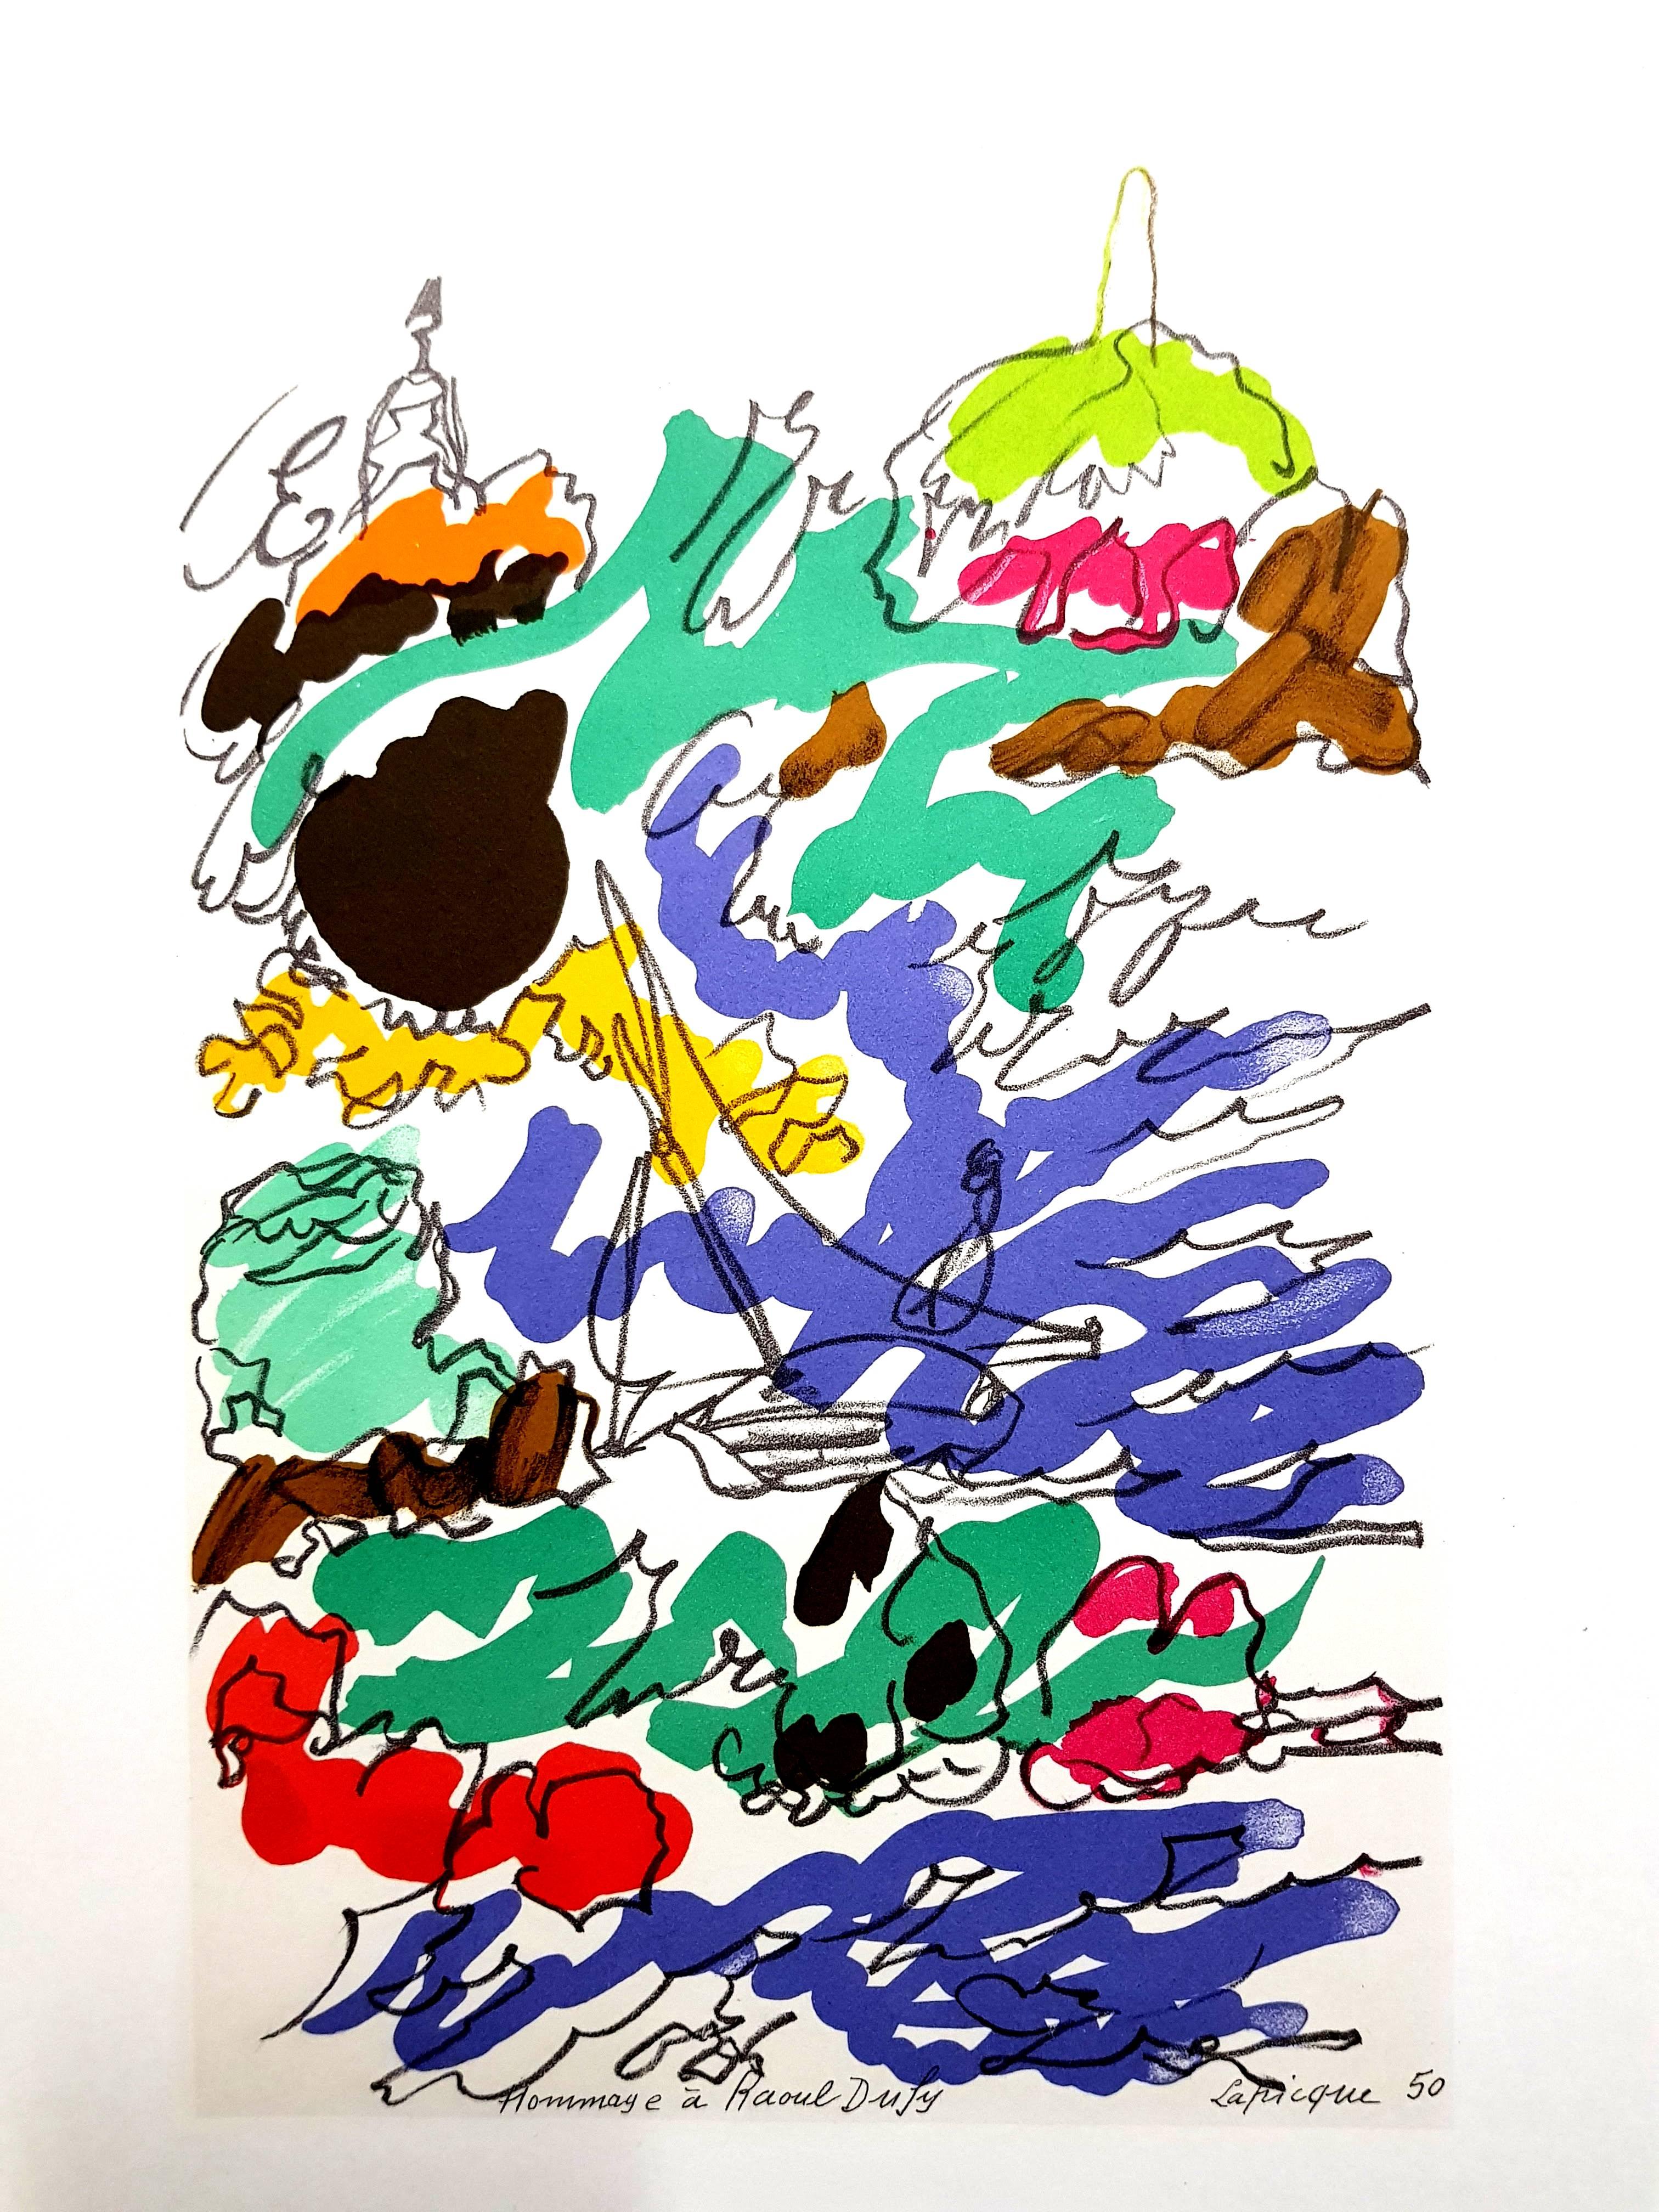 (après) Charles Lapicque
Lithographie d'après une aquarelle, publiée dans le livre "Lettre à mon peintre Raoul Dufy". Paris, Librairie Académique Perrin, 1965.
Signature imprimée
Dimensions : 30 x 24 cm
Etat : Excellent

Raoul Dufy
Né en 1877, le